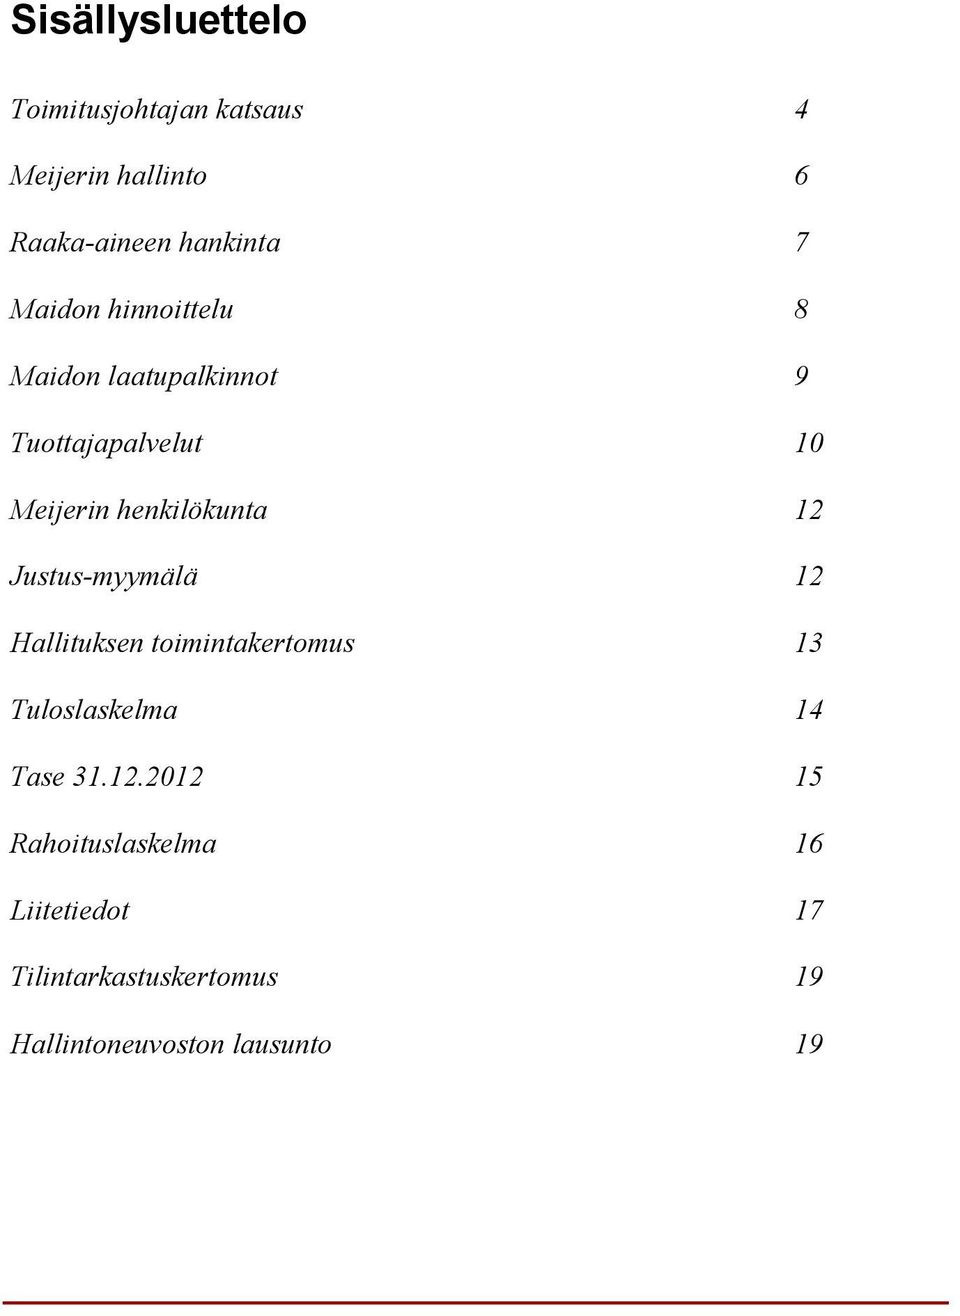 12 Justus-myymälä 12 Hallituksen toimintakertomus 13 Tuloslaskelma 14 Tase 31.12.2012 15